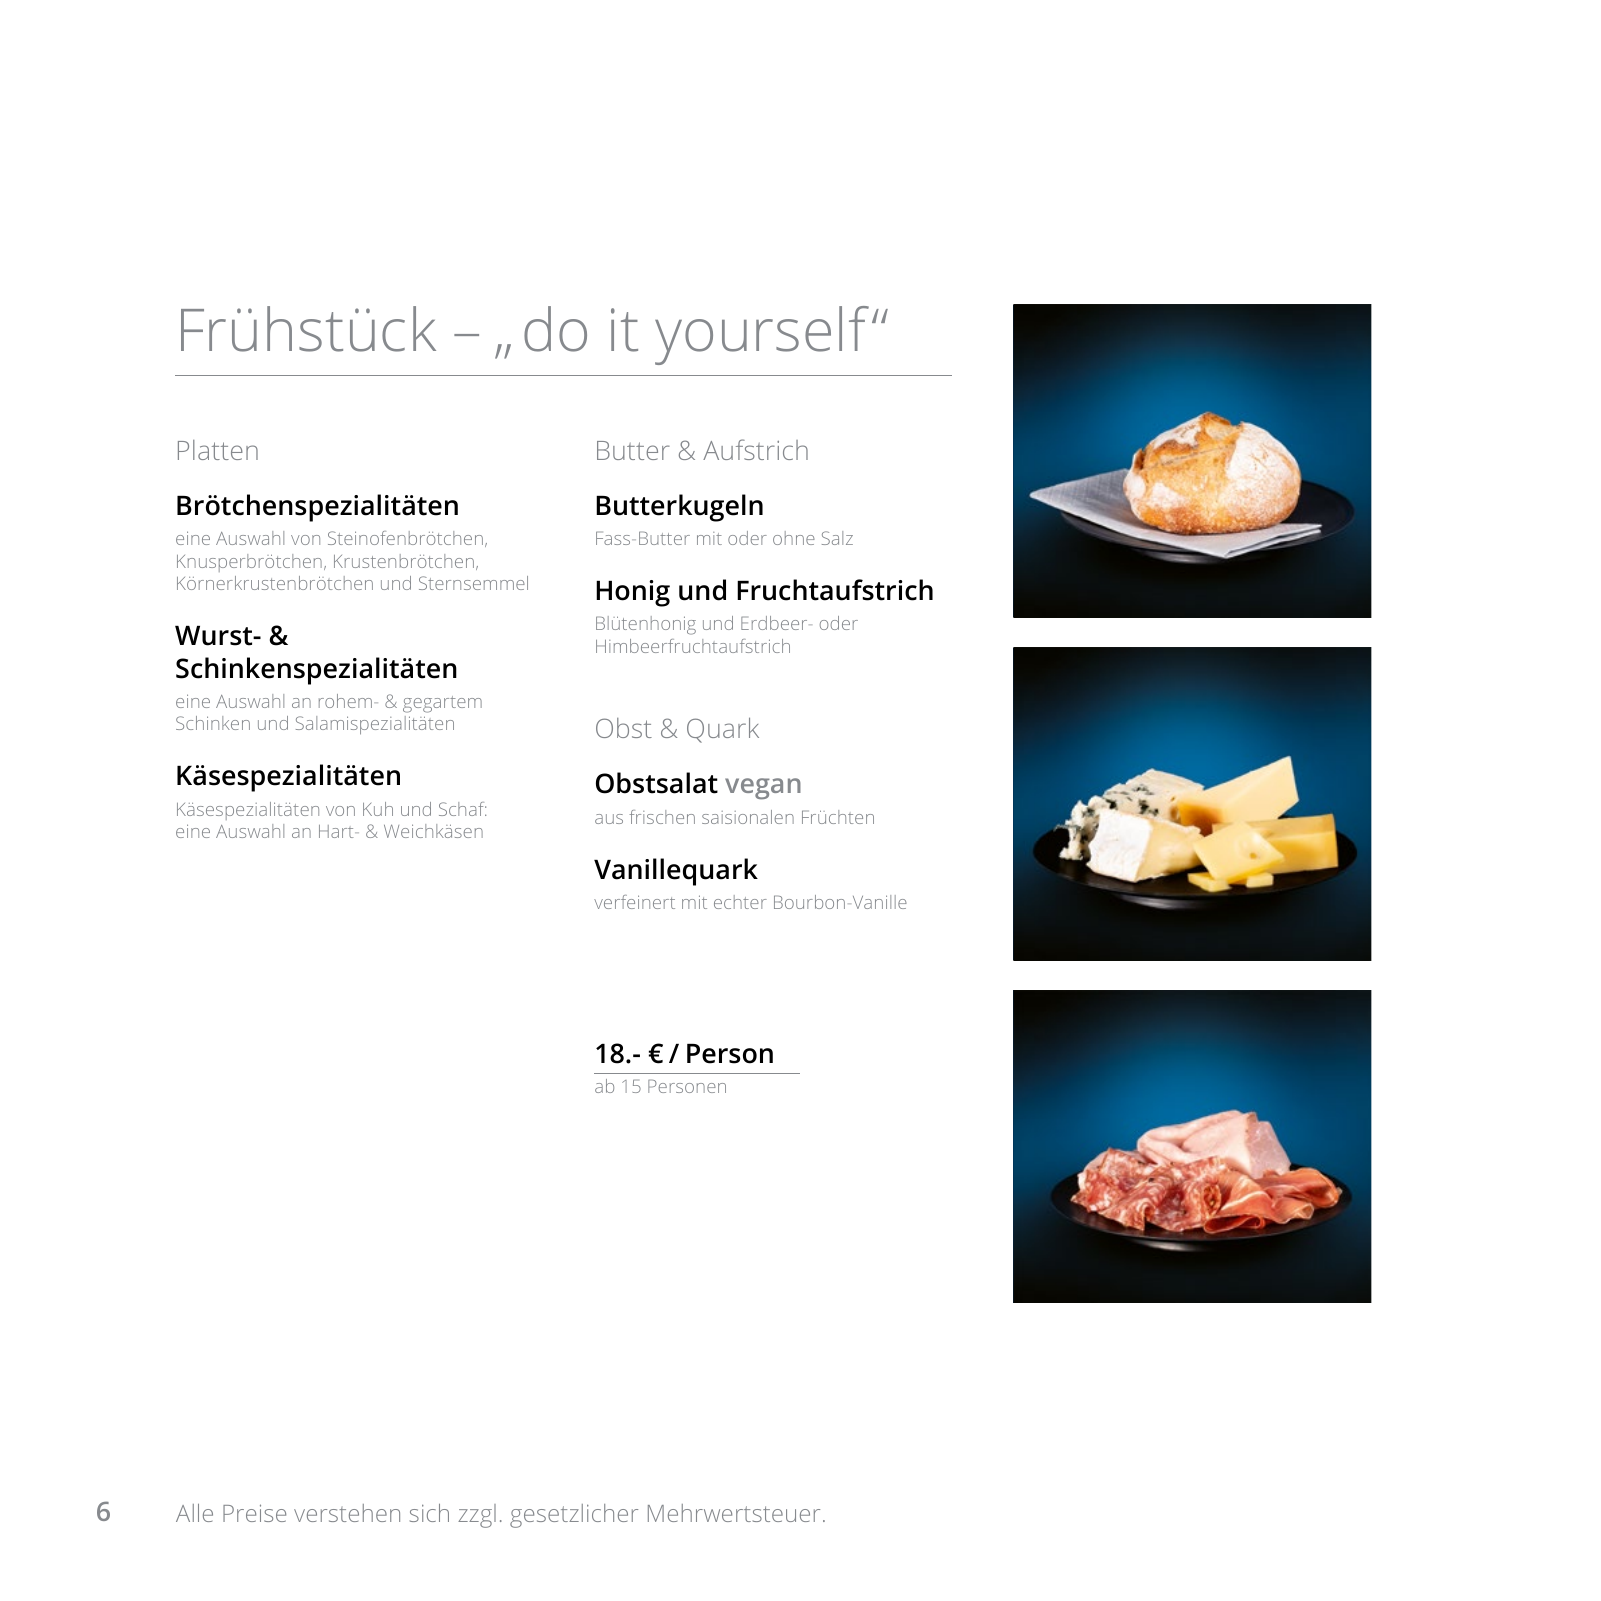 Vorschau Catering Katalog 2022 - Business Seite 6